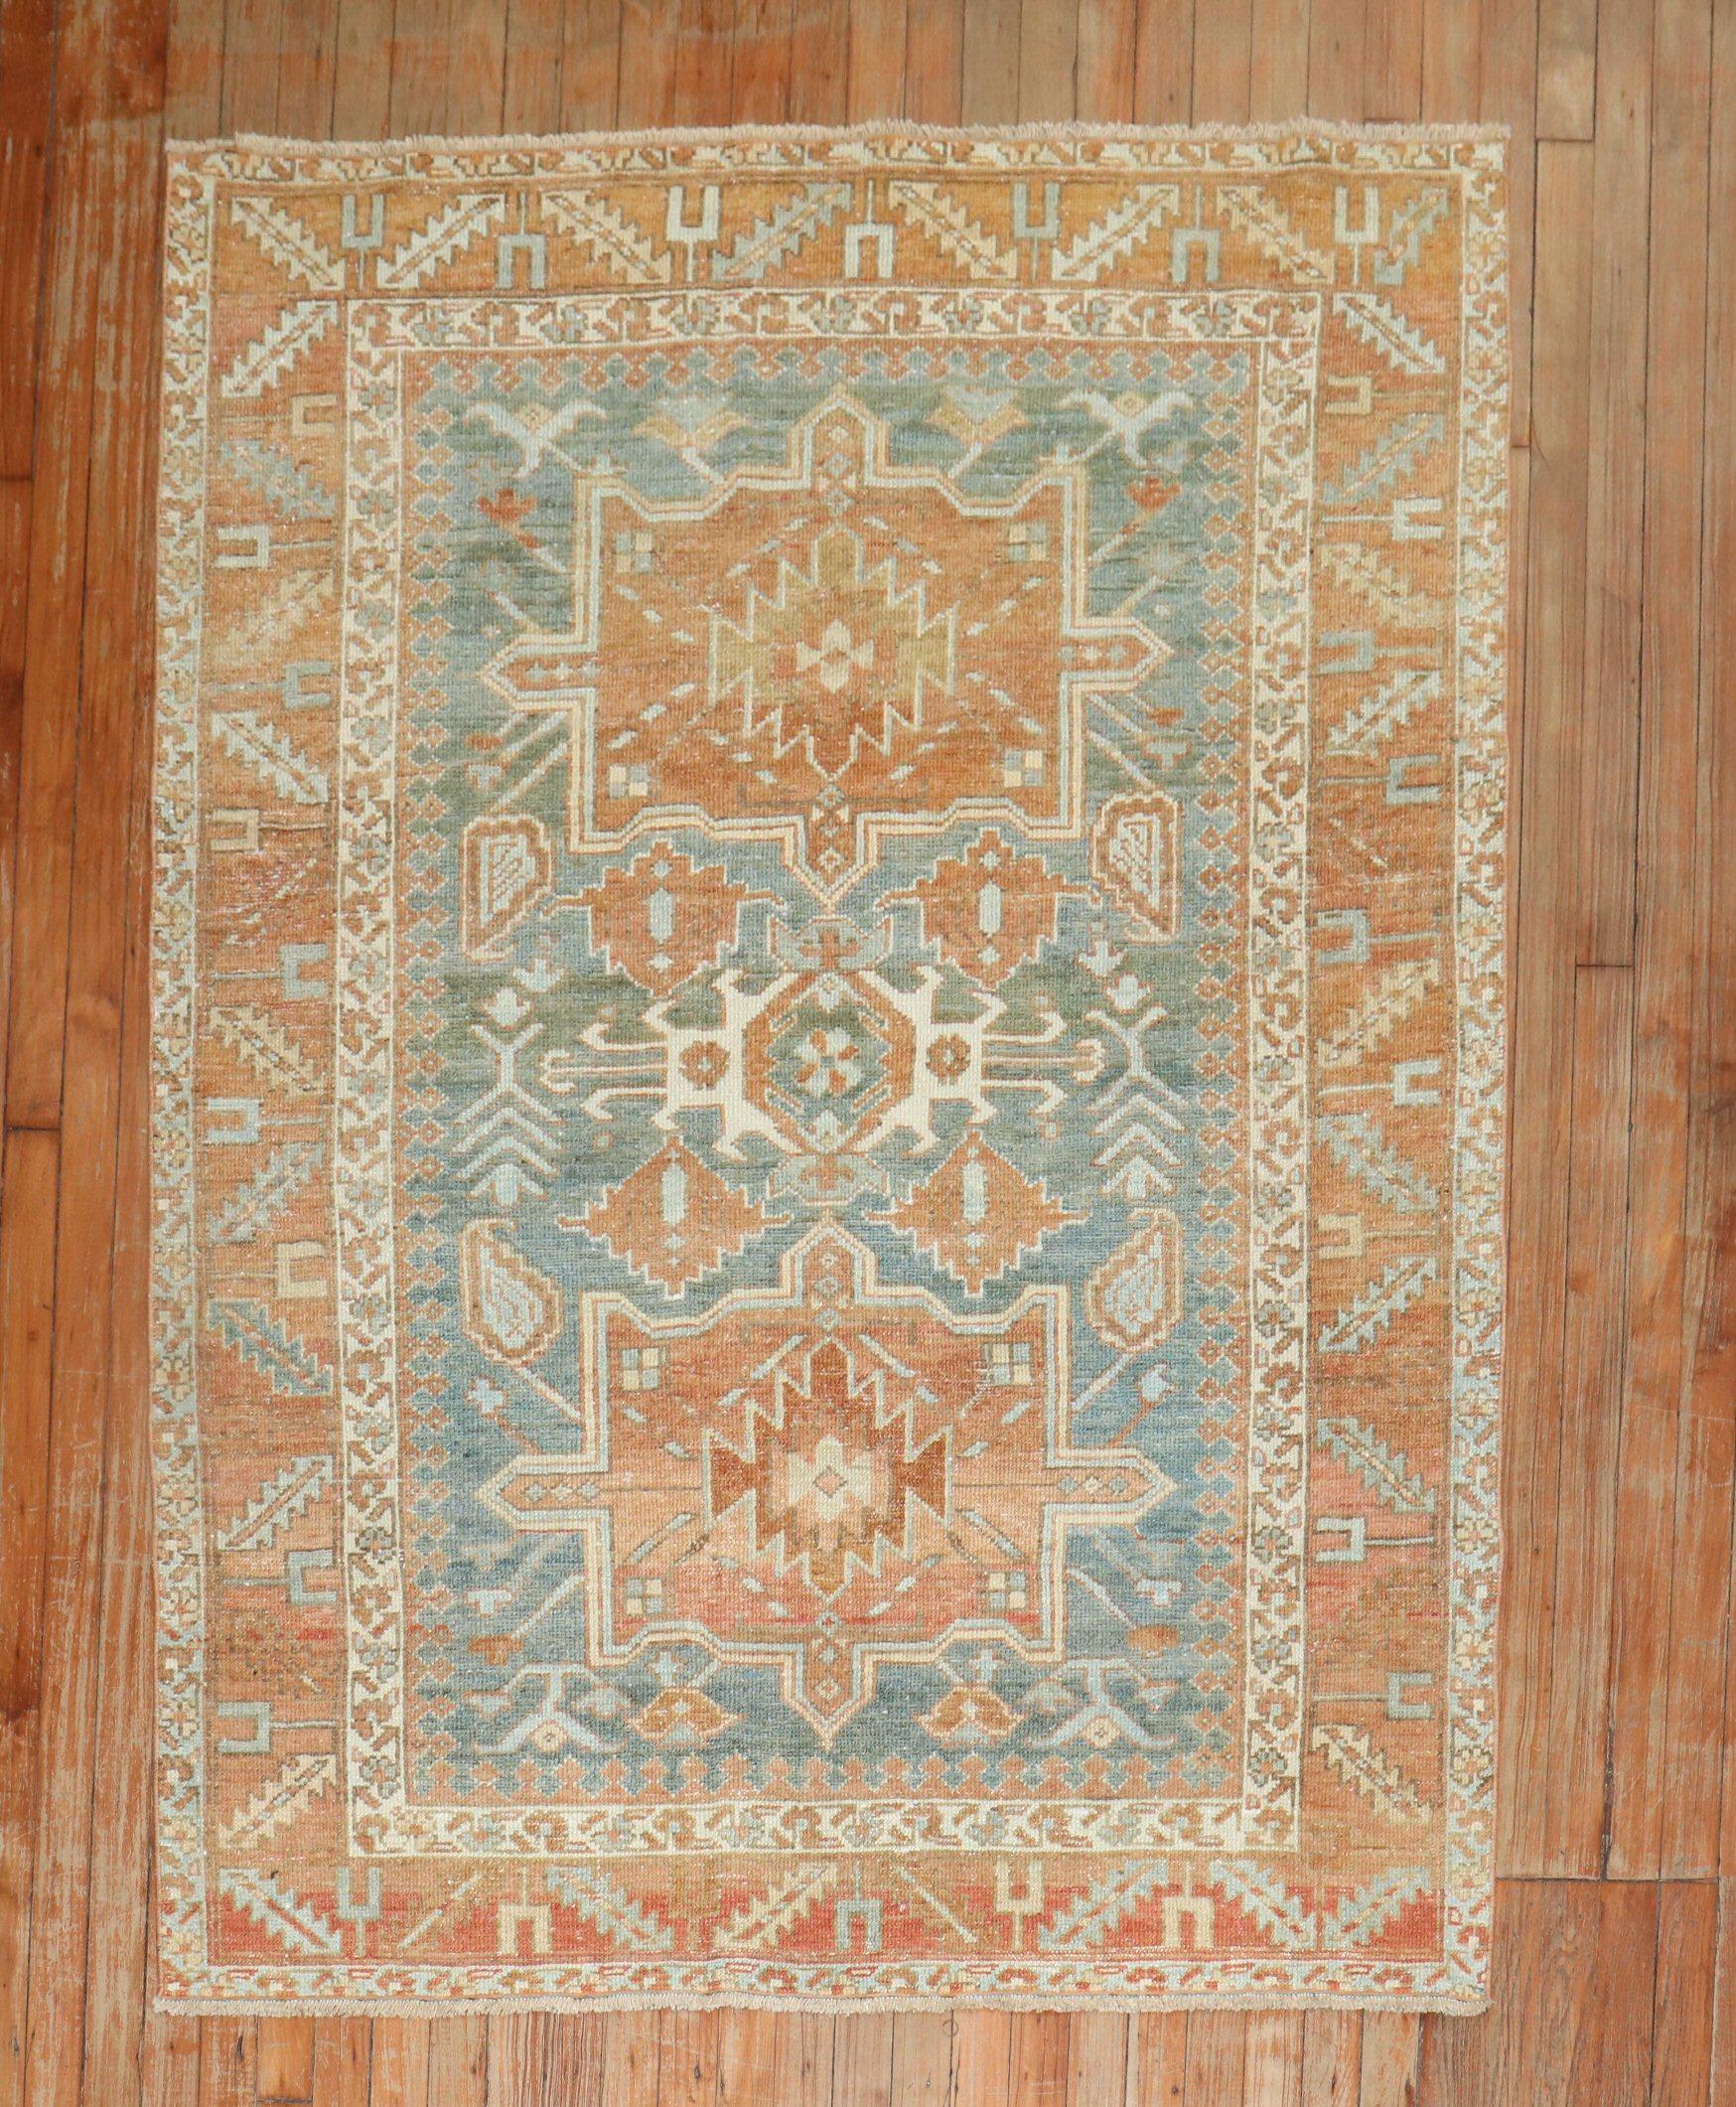 1920s Persian Heriz accent rug in warm colors

Measures: 4'5'' x 6'2''